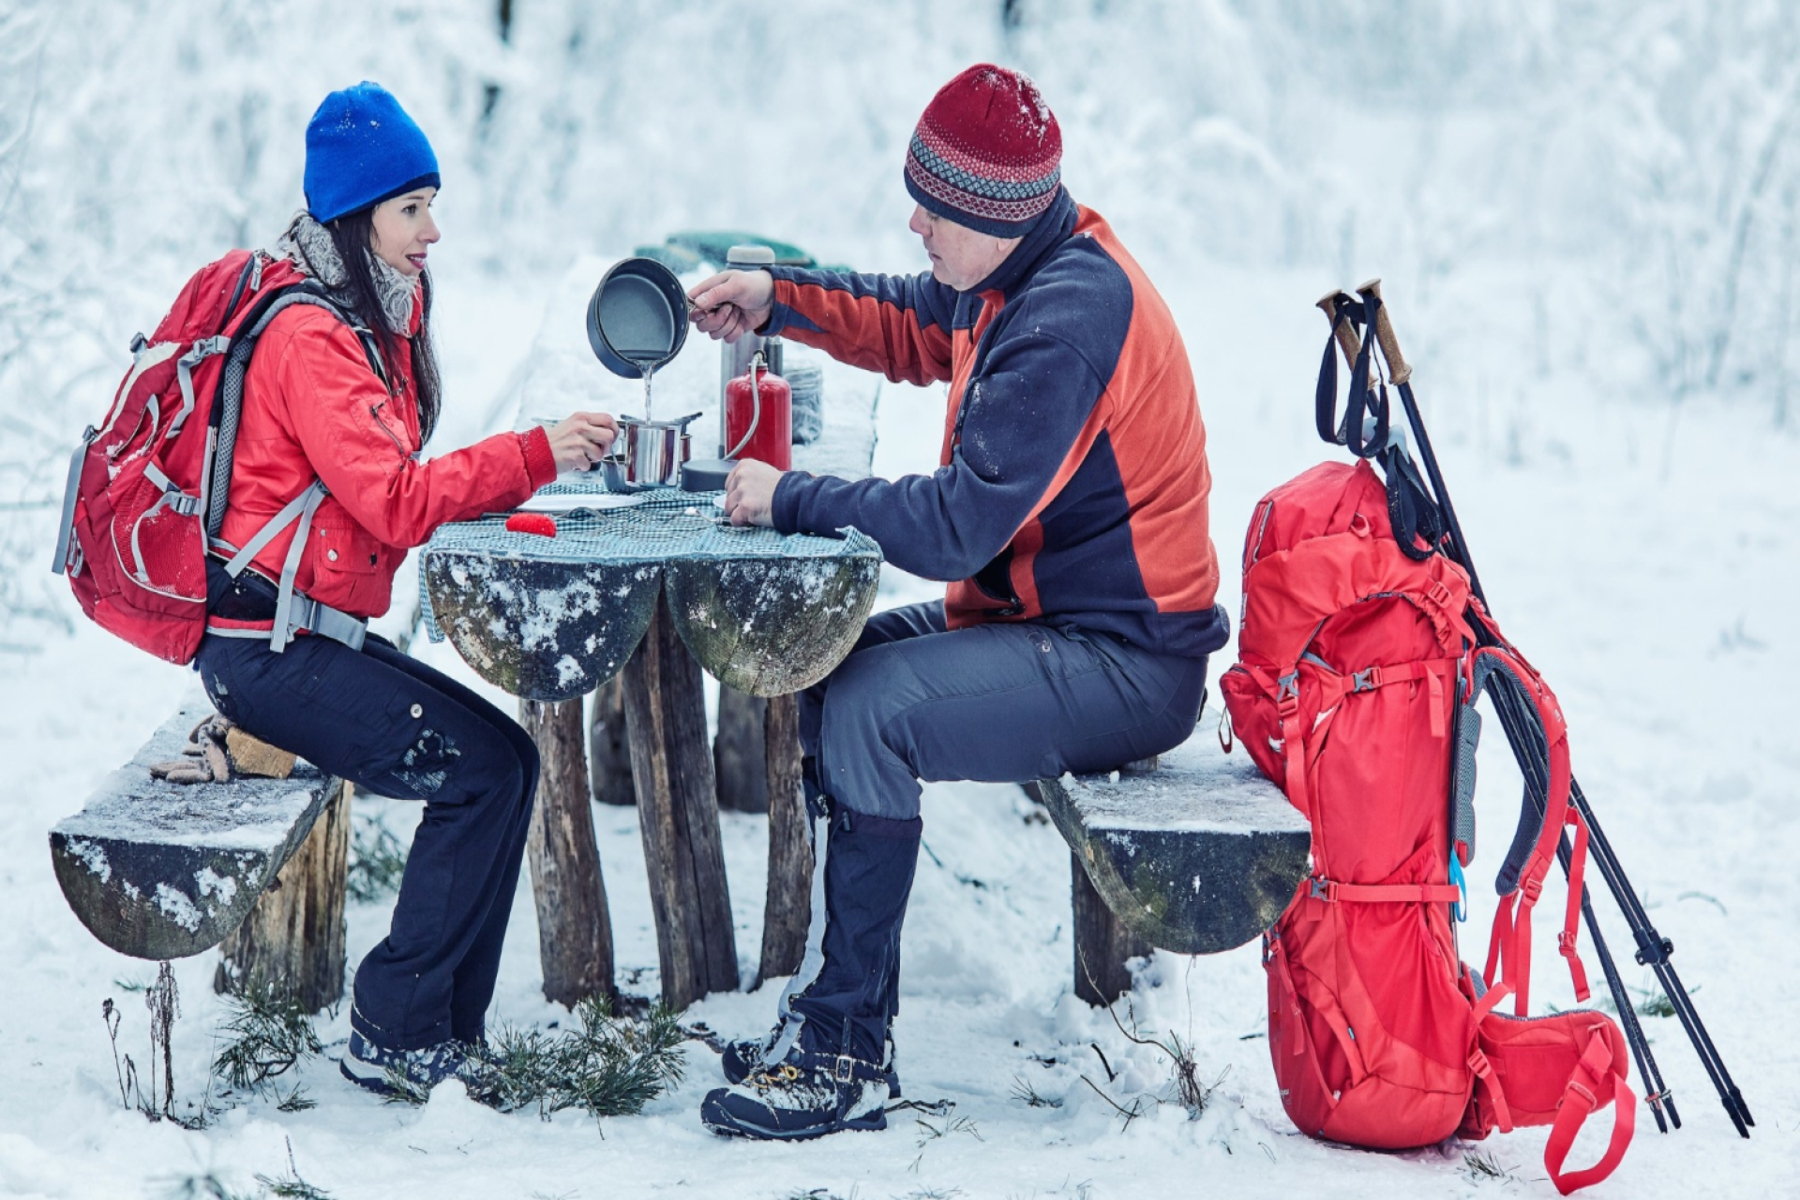 Διατροφή: Τι πρέπει να τρώτε όταν κάνετε winter sports;